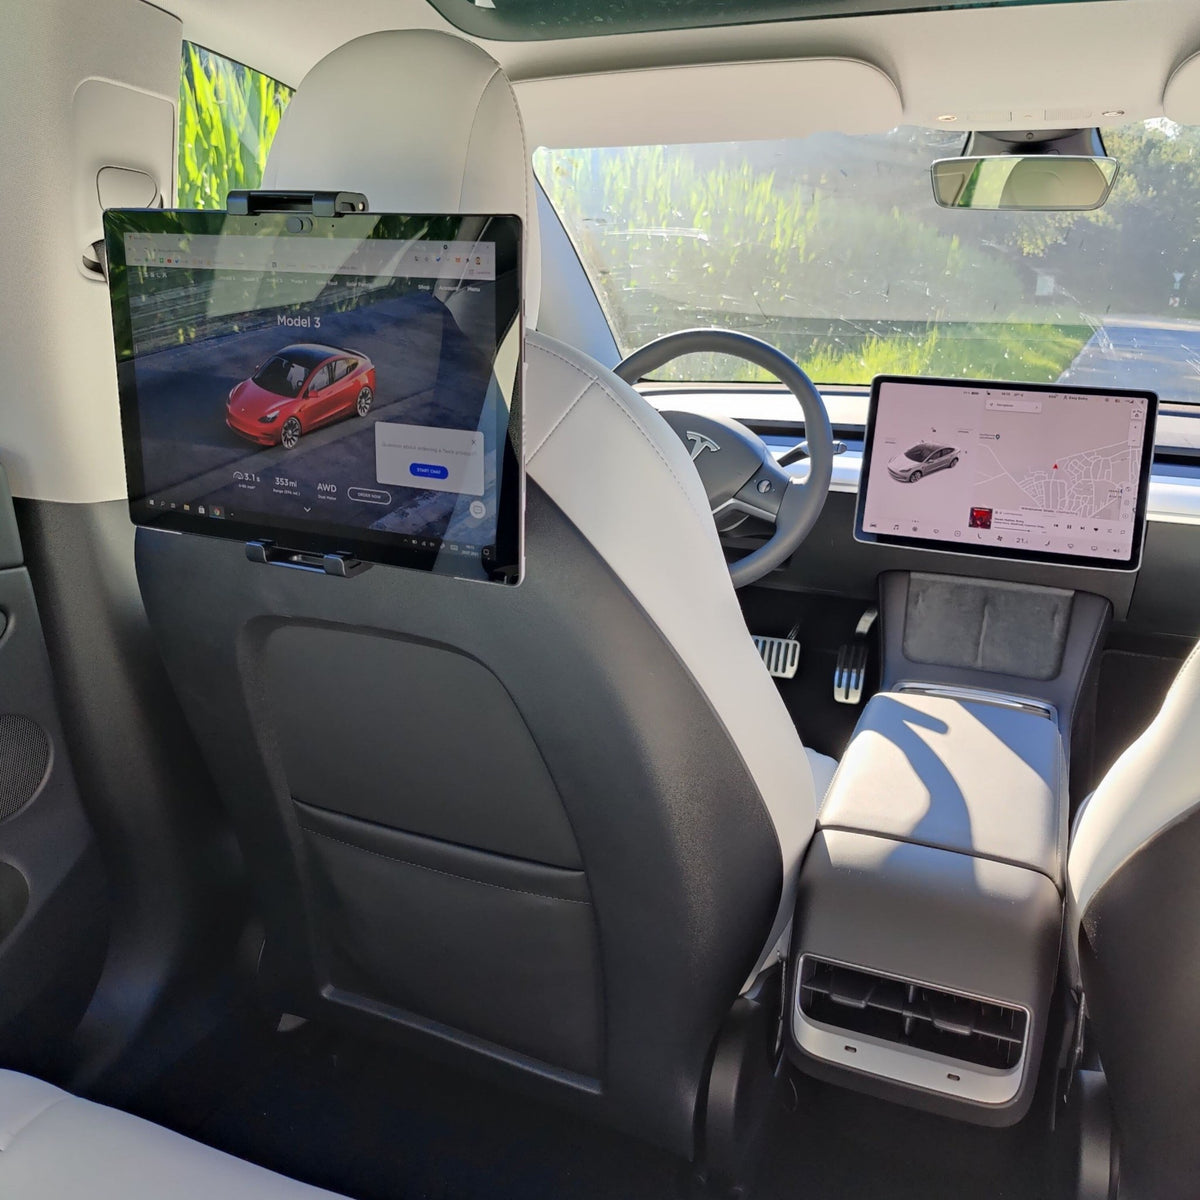 Sitzhaken für Vorder und Rückseite für Tesla Model 3 / Y